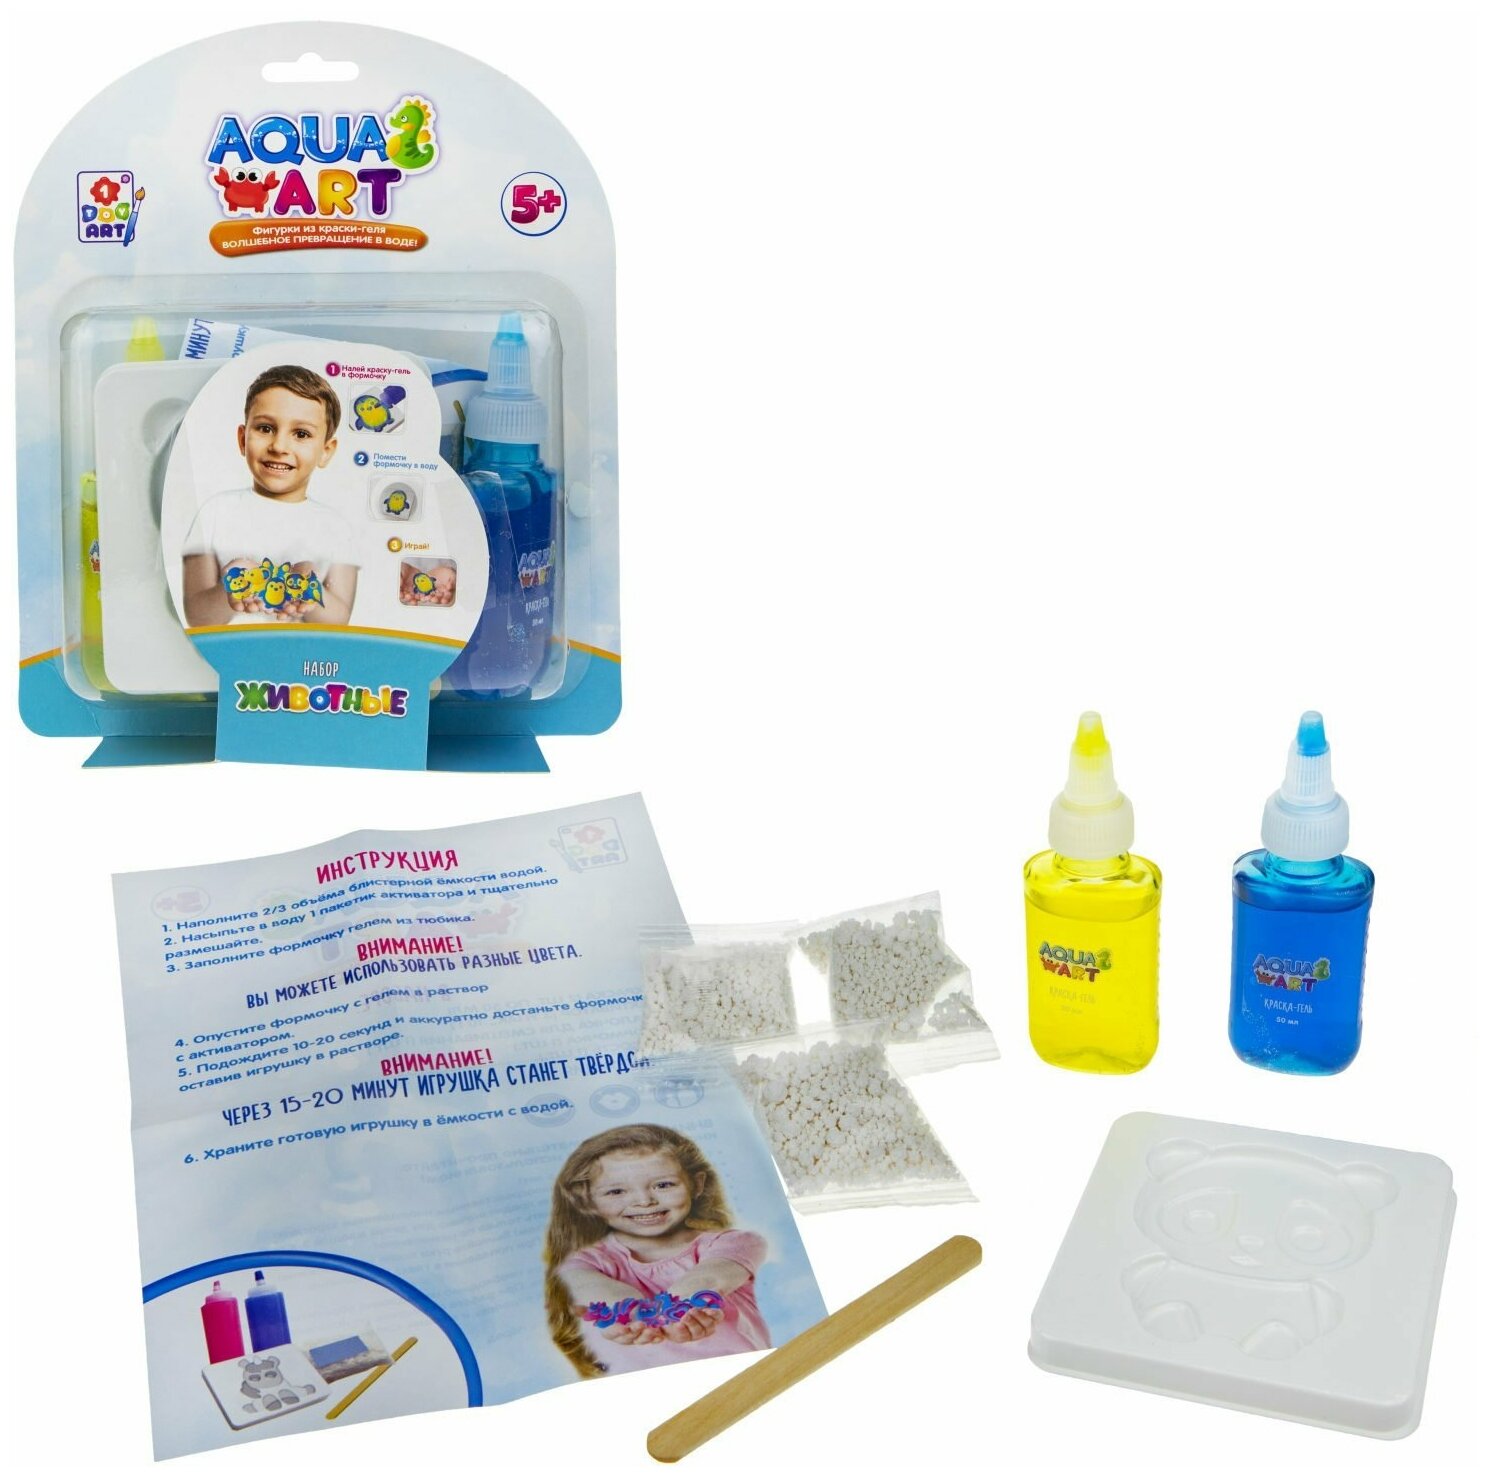 Aqua art Животные 2 1Toy (набор для творчества 1 формочка 2 краски c блестками по 50 мл Т20079)